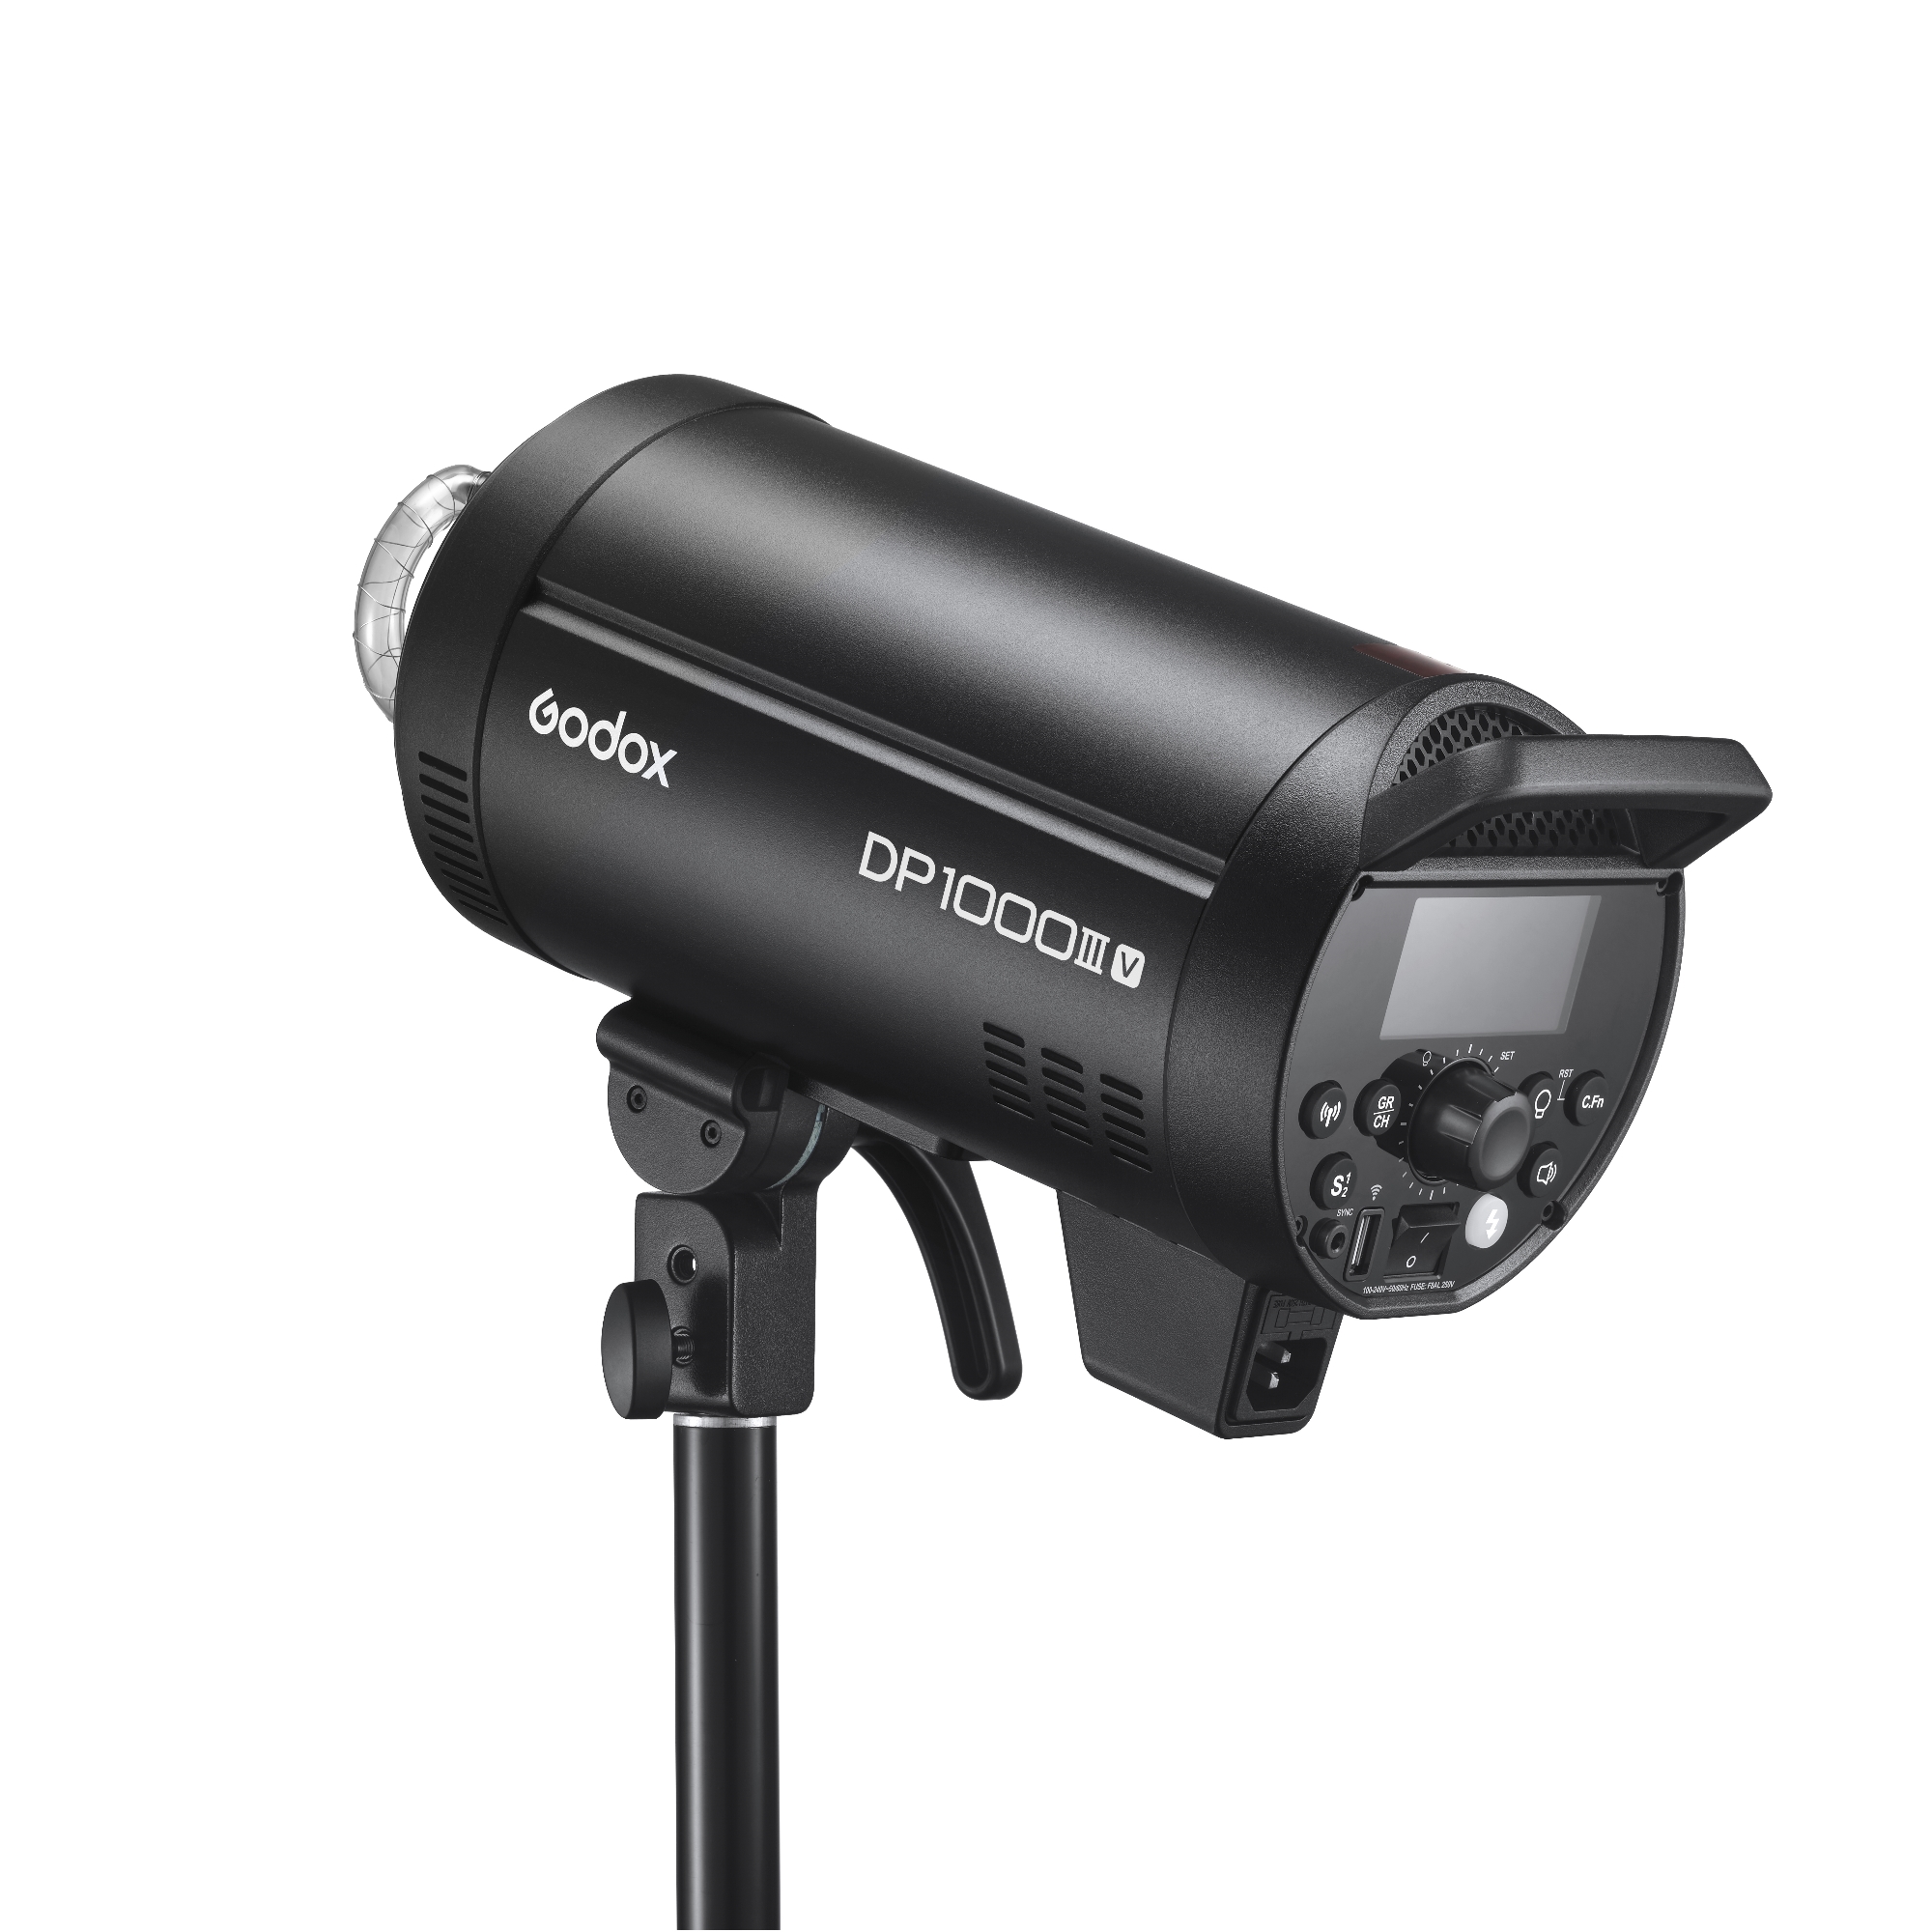    Godox DP1000IIIV   Ultra-mart